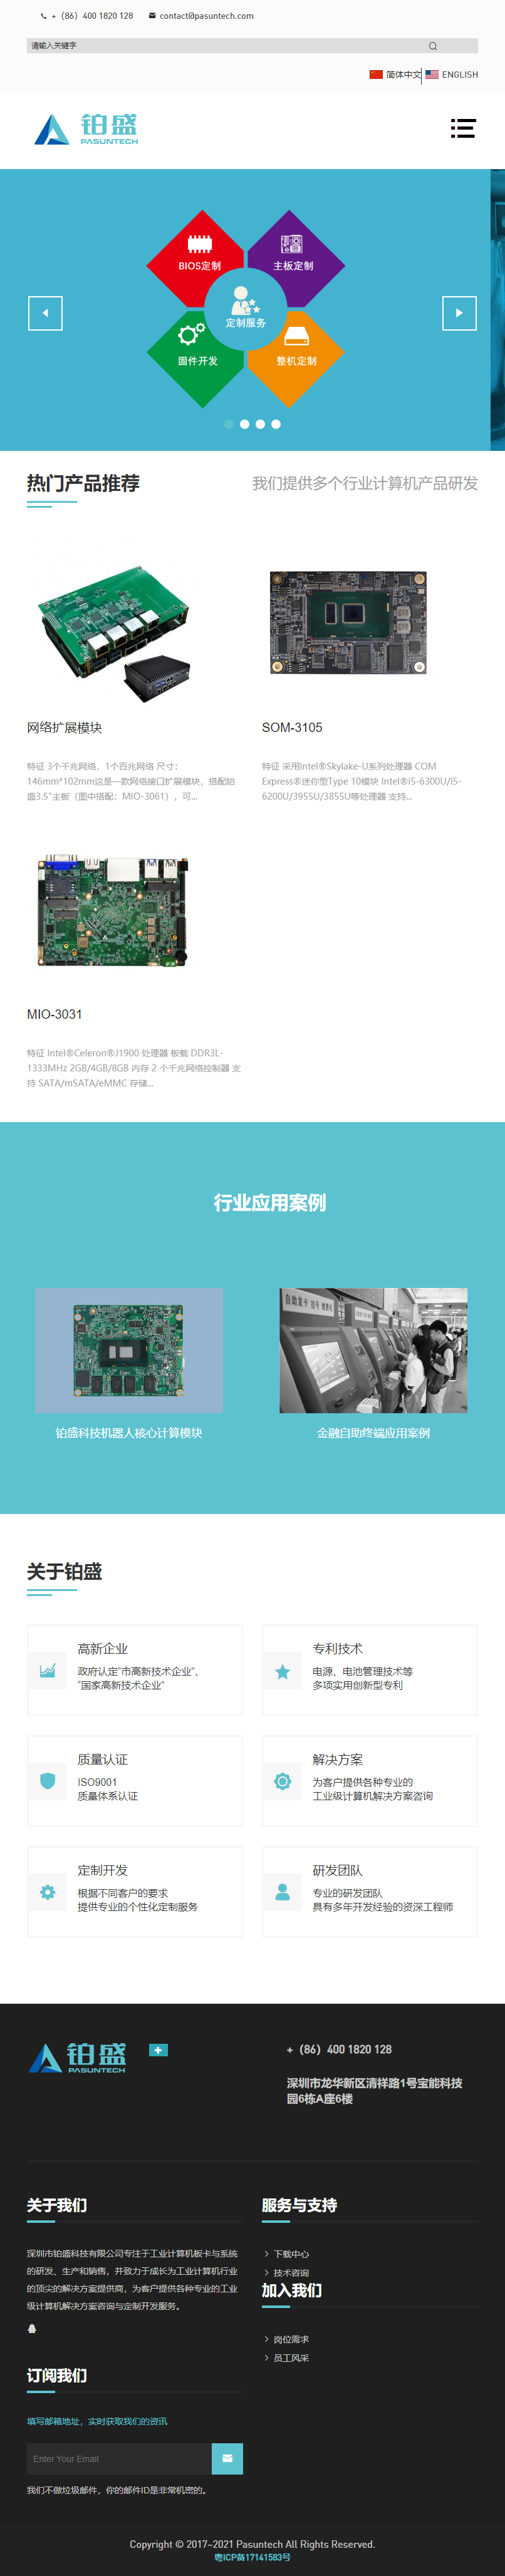 深圳市铂盛科技有限公司网站案例